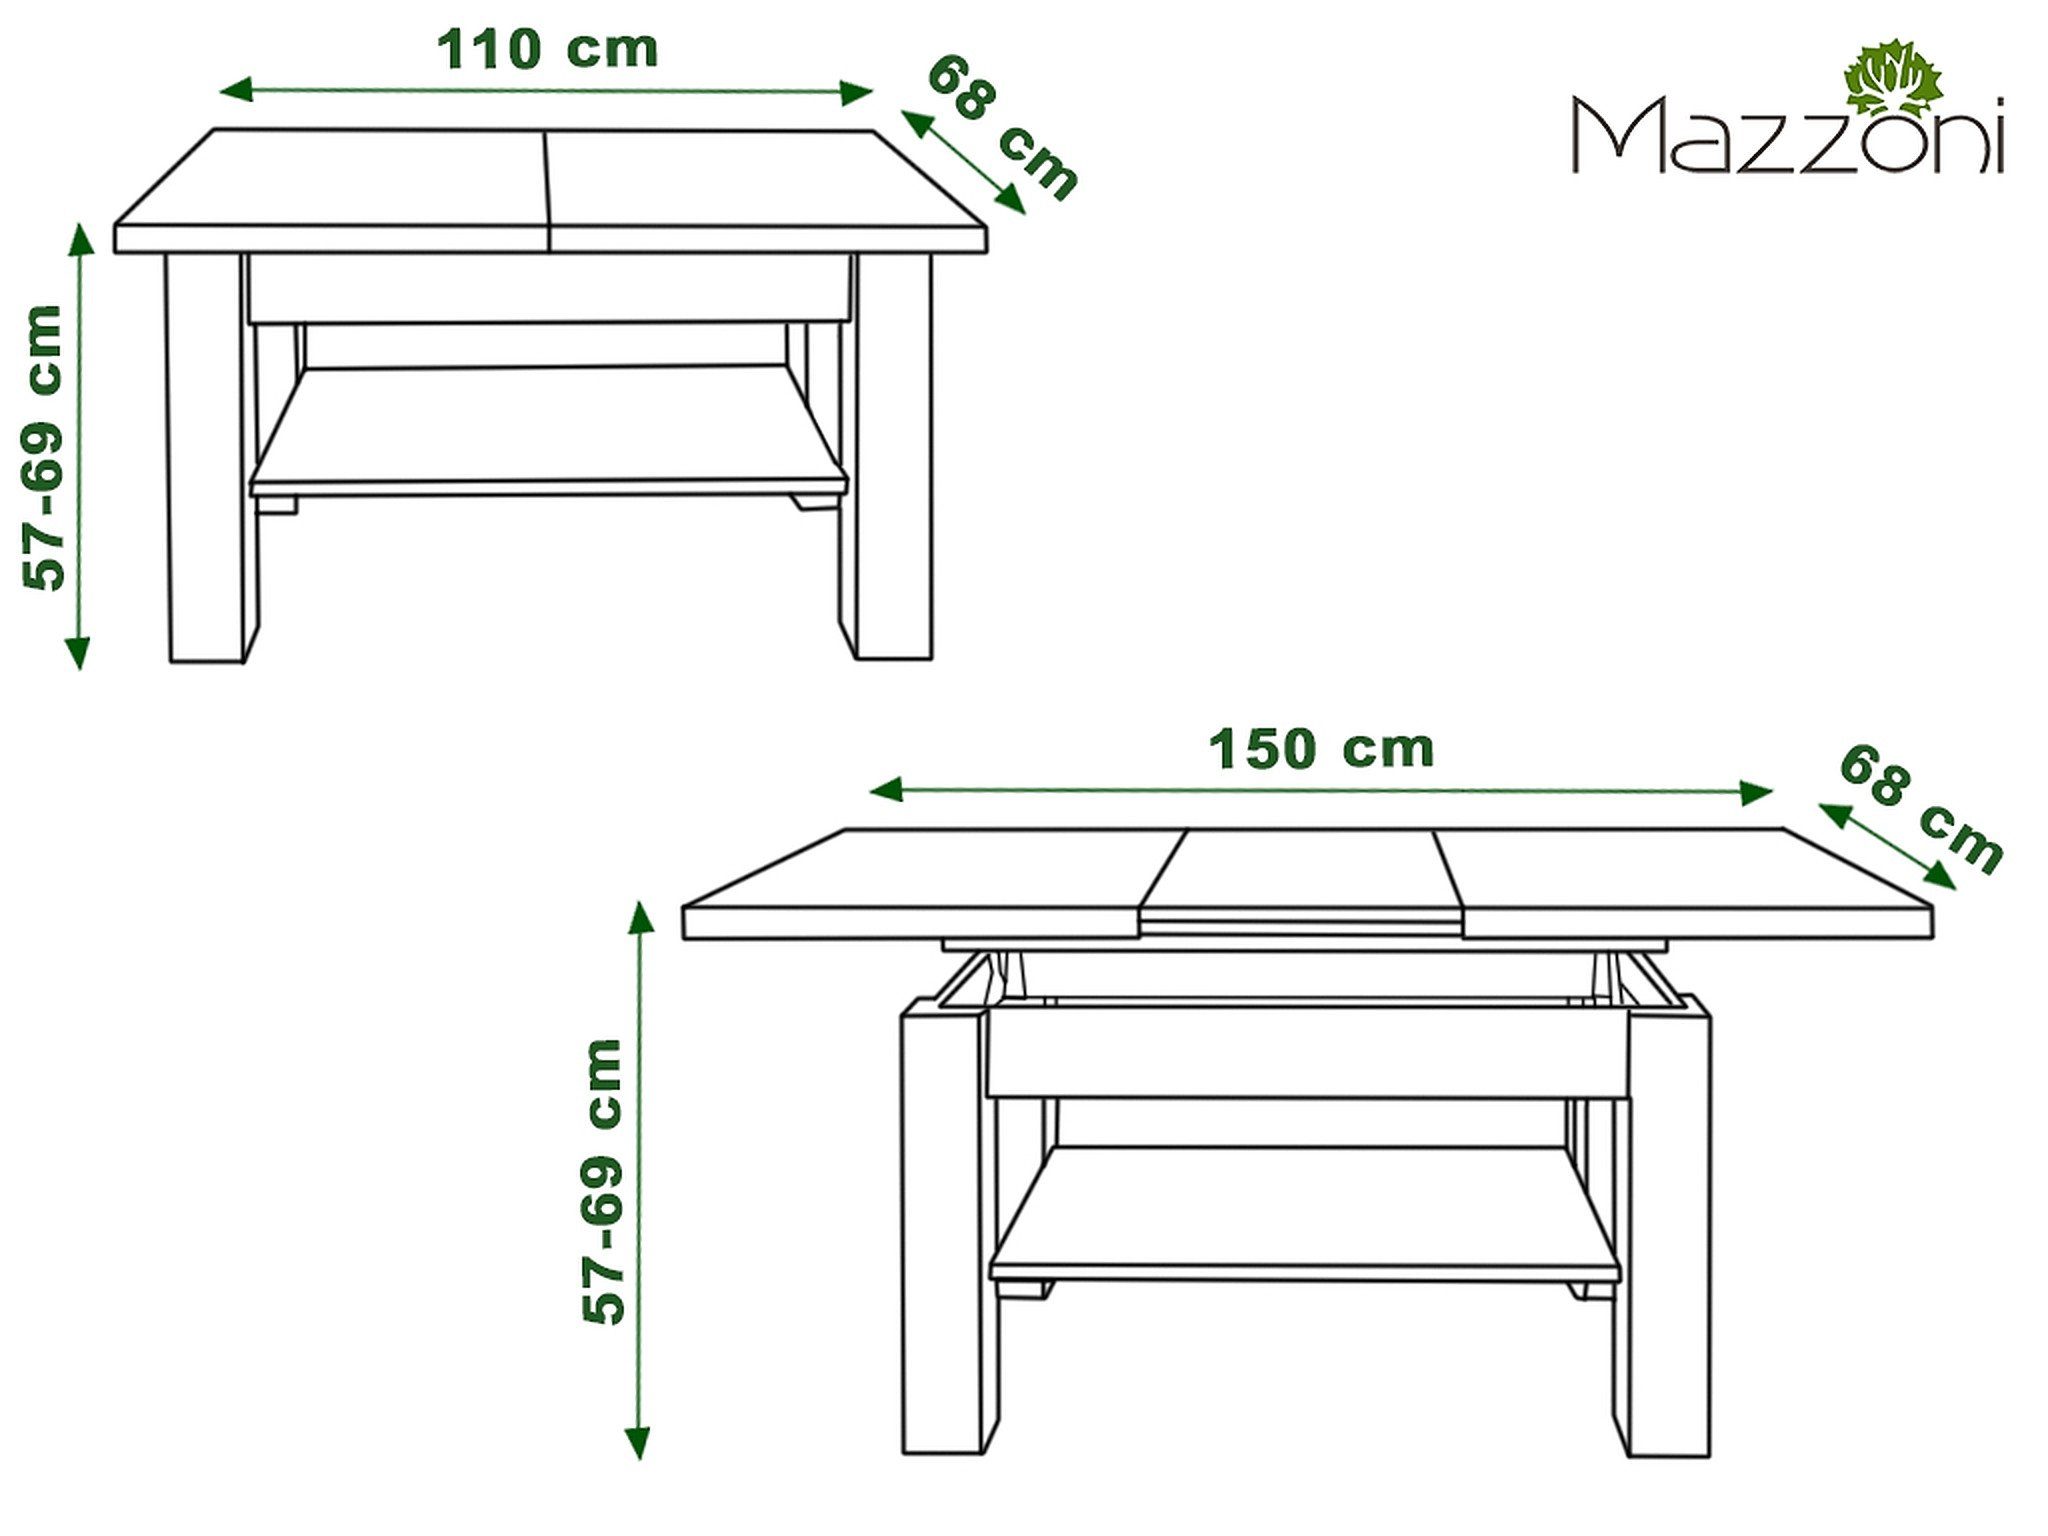 Mazzoni Couchtisch Astoria Erle stufenlos 110-150cm höhenverstellbar ausziehbar 59,5-71,5